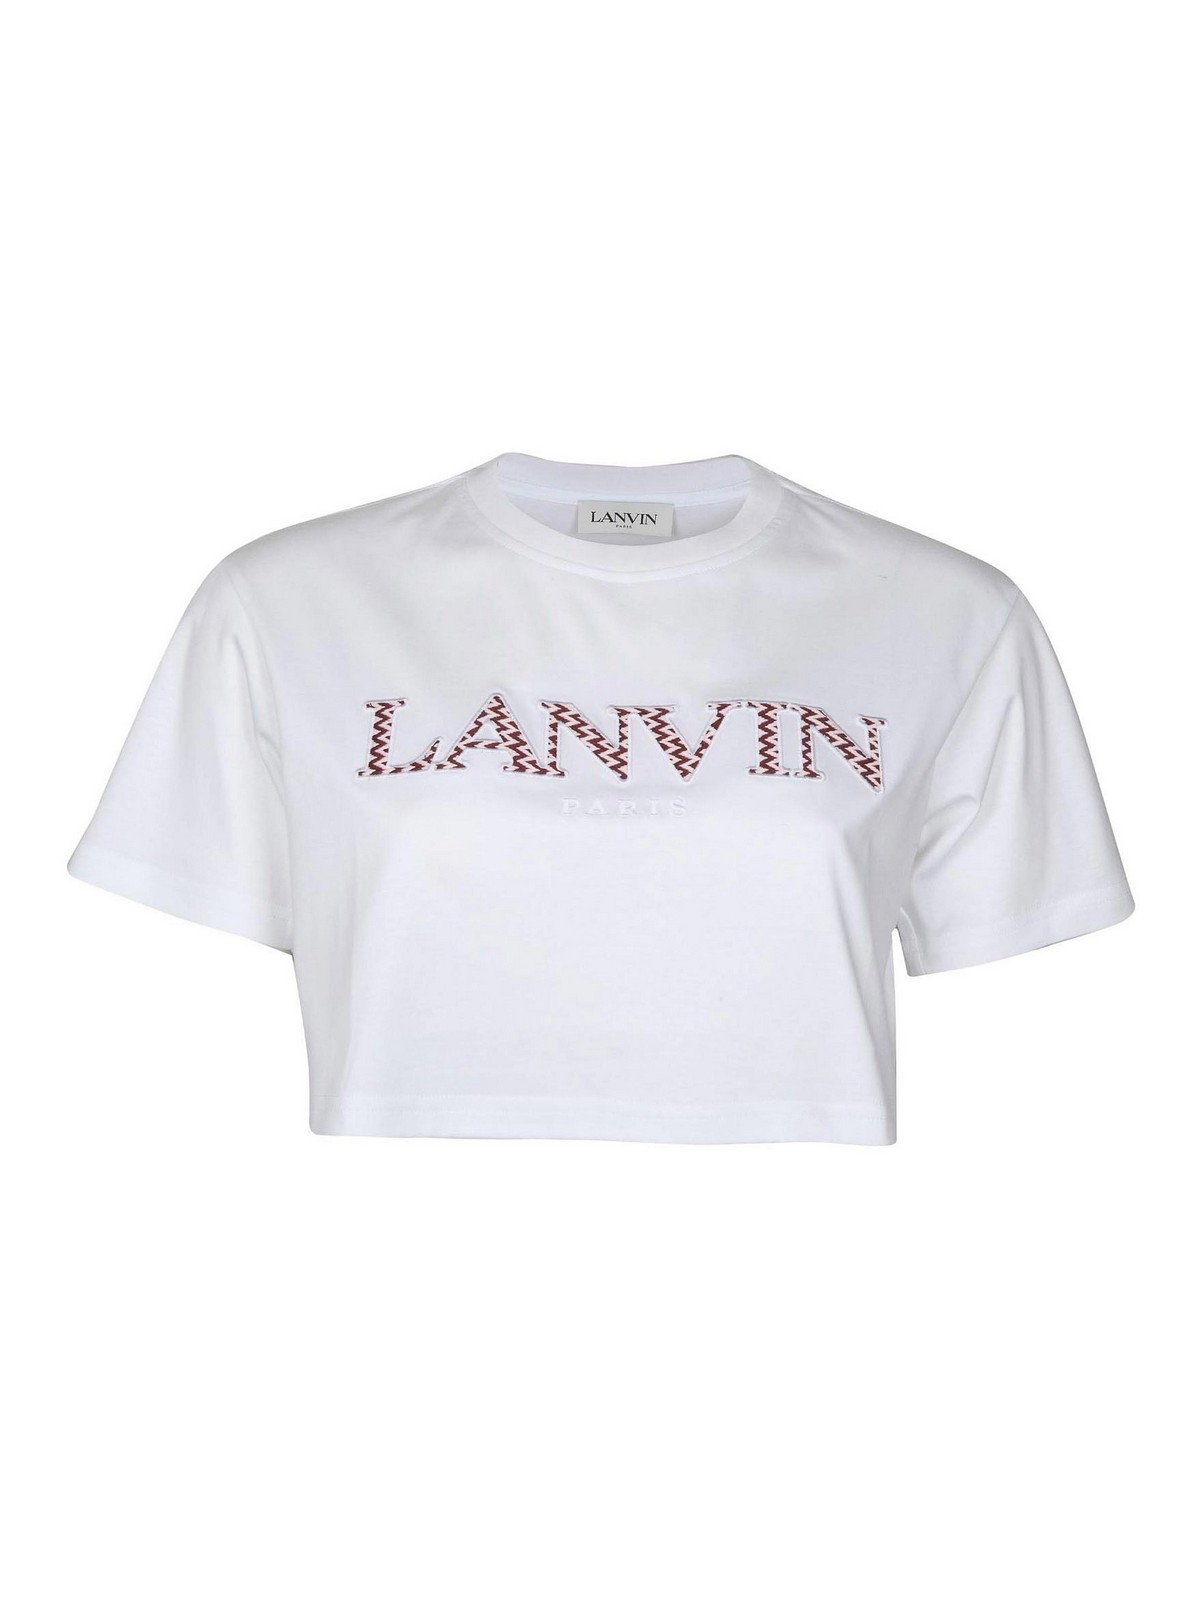 Lanvin Camisa - Beis